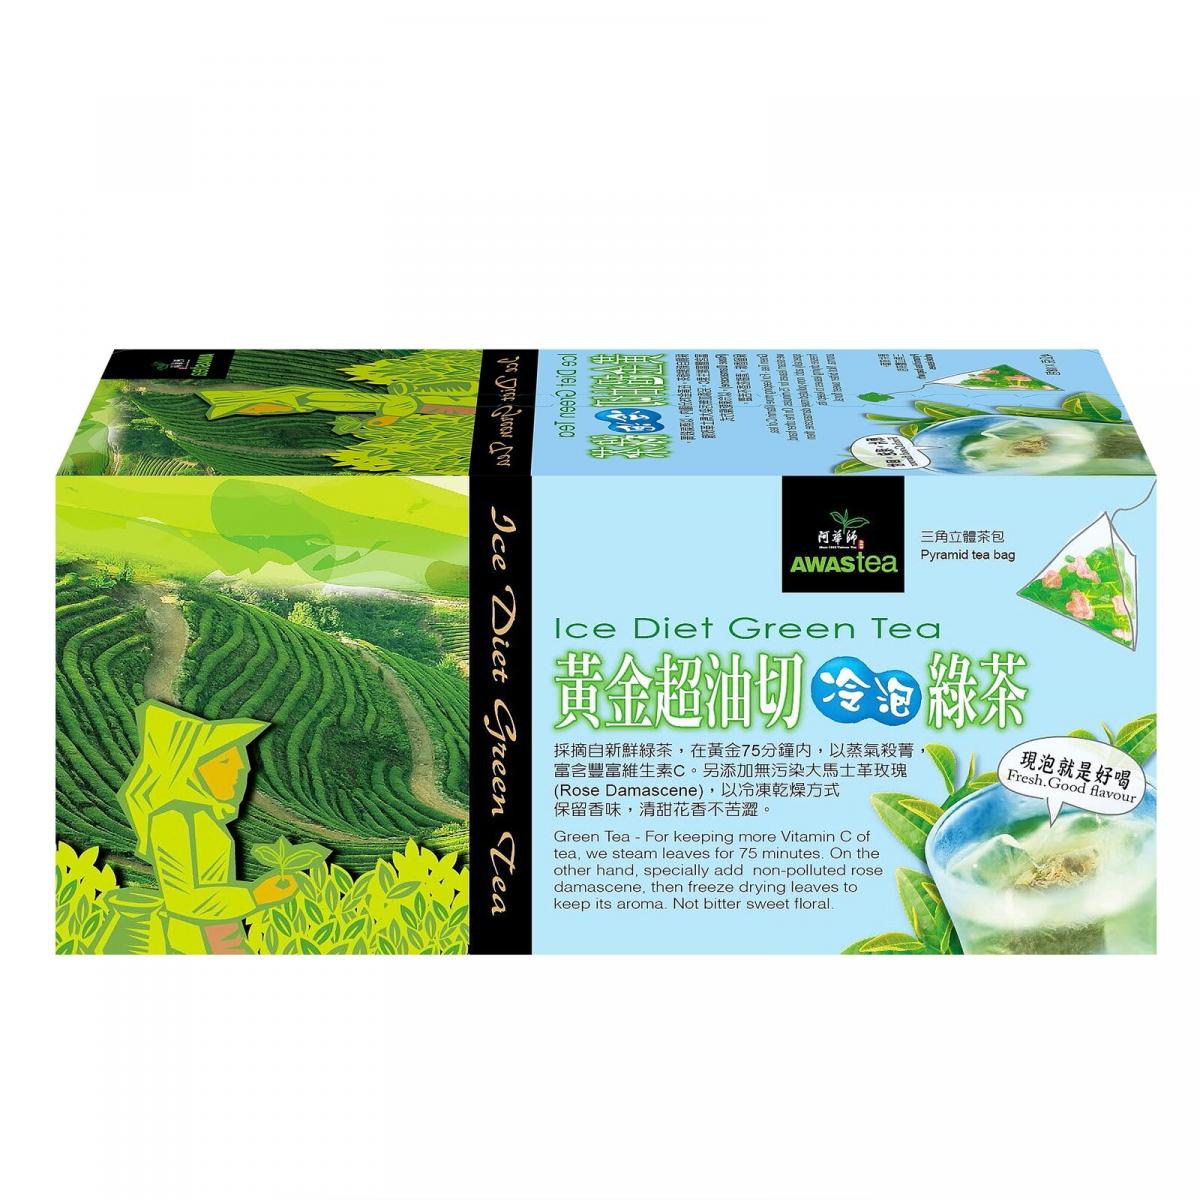 阿華師黃金超油切冷泡綠茶 (18入/盒)